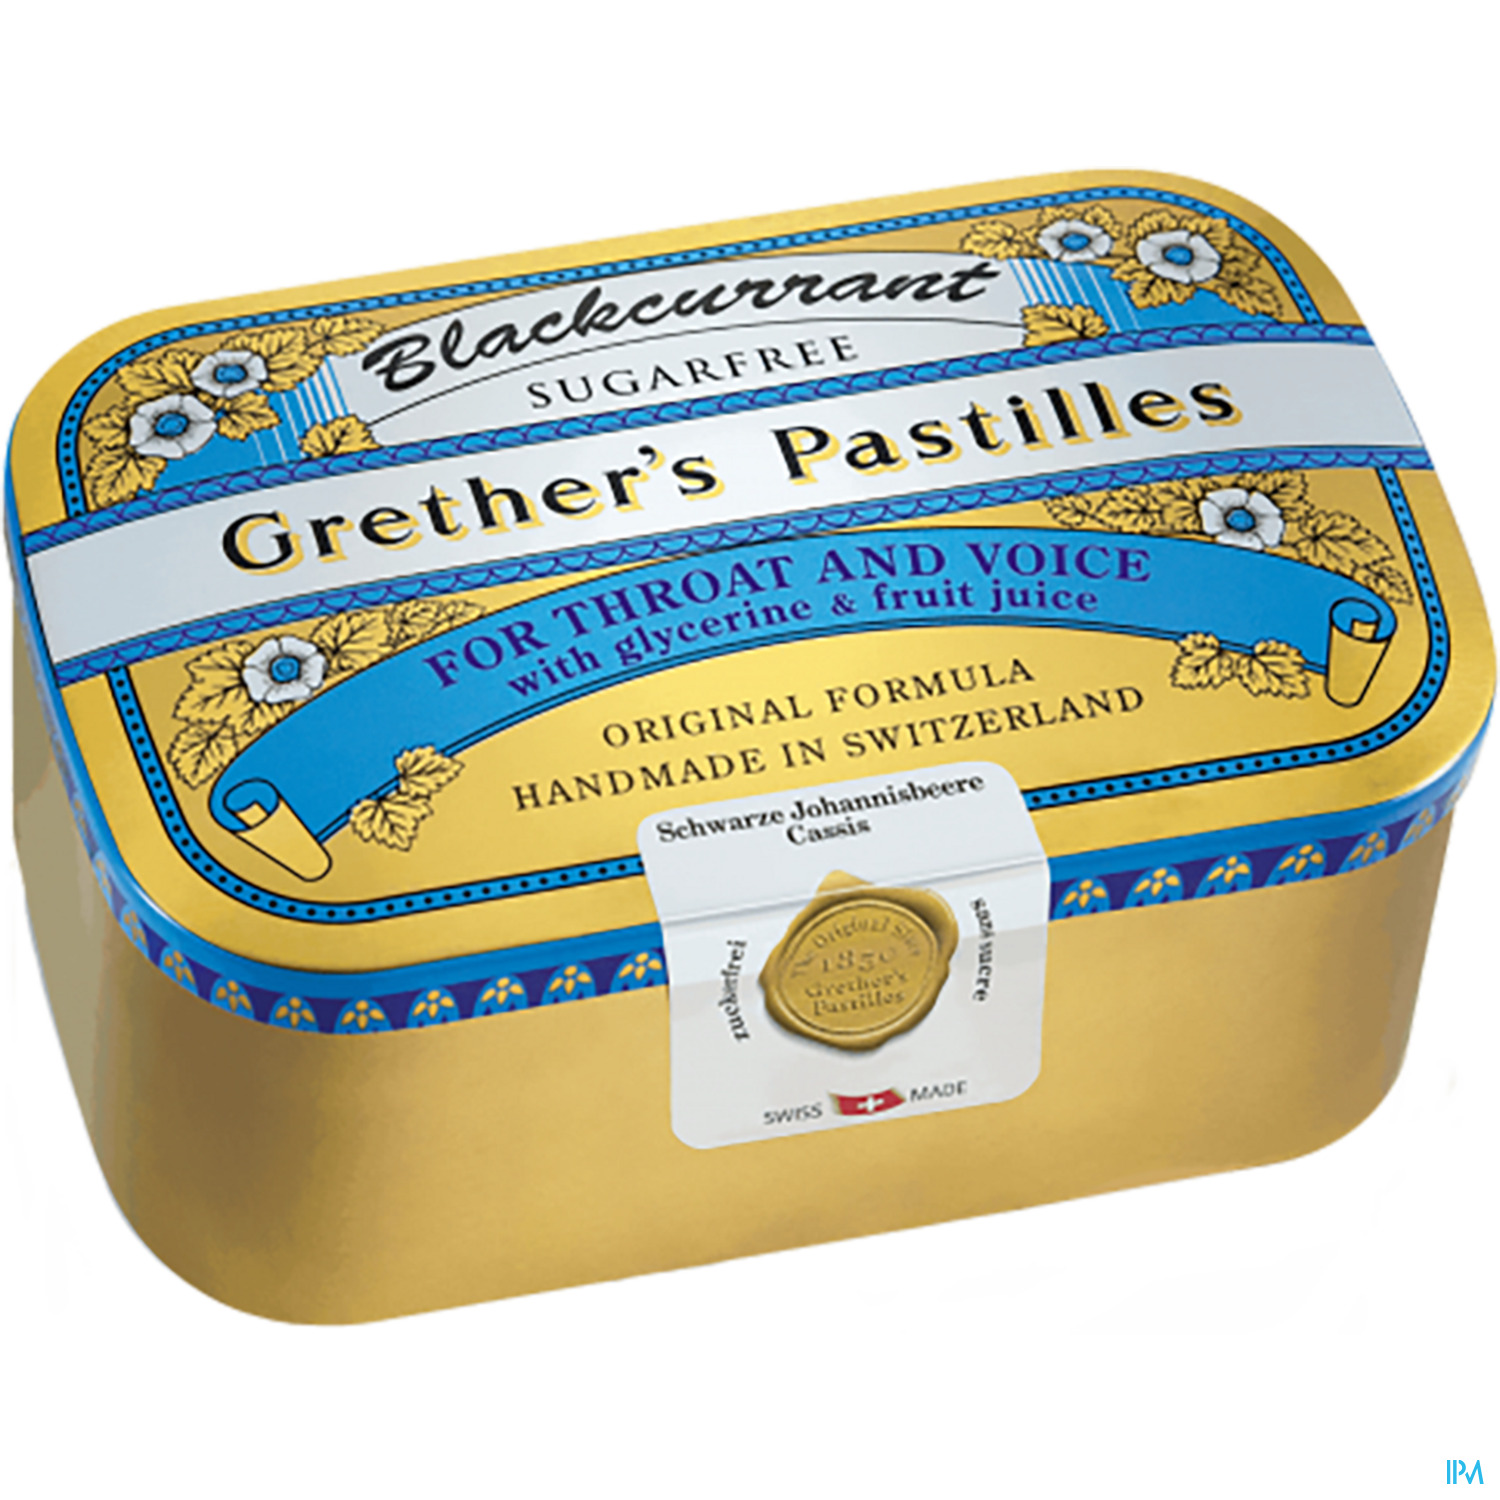 Grether's Pastilles Blackcurrant Zuckerfrei 440g